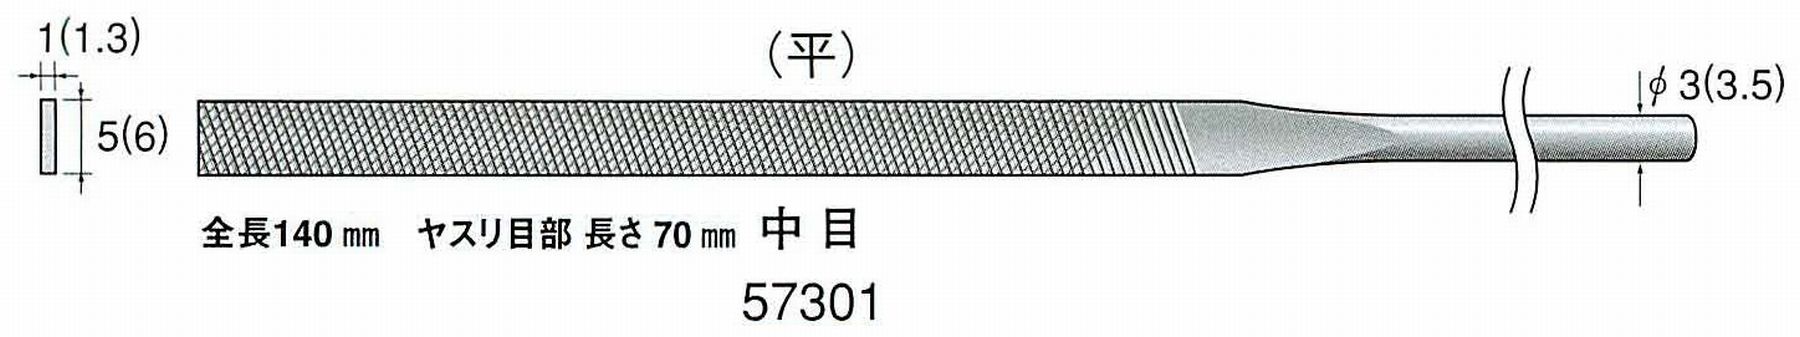 ナカニシ/NAKANISHI 精密仕上げヤスリ 平 中目 軸径(シャンク)φ3.0mm(3.5) 57301